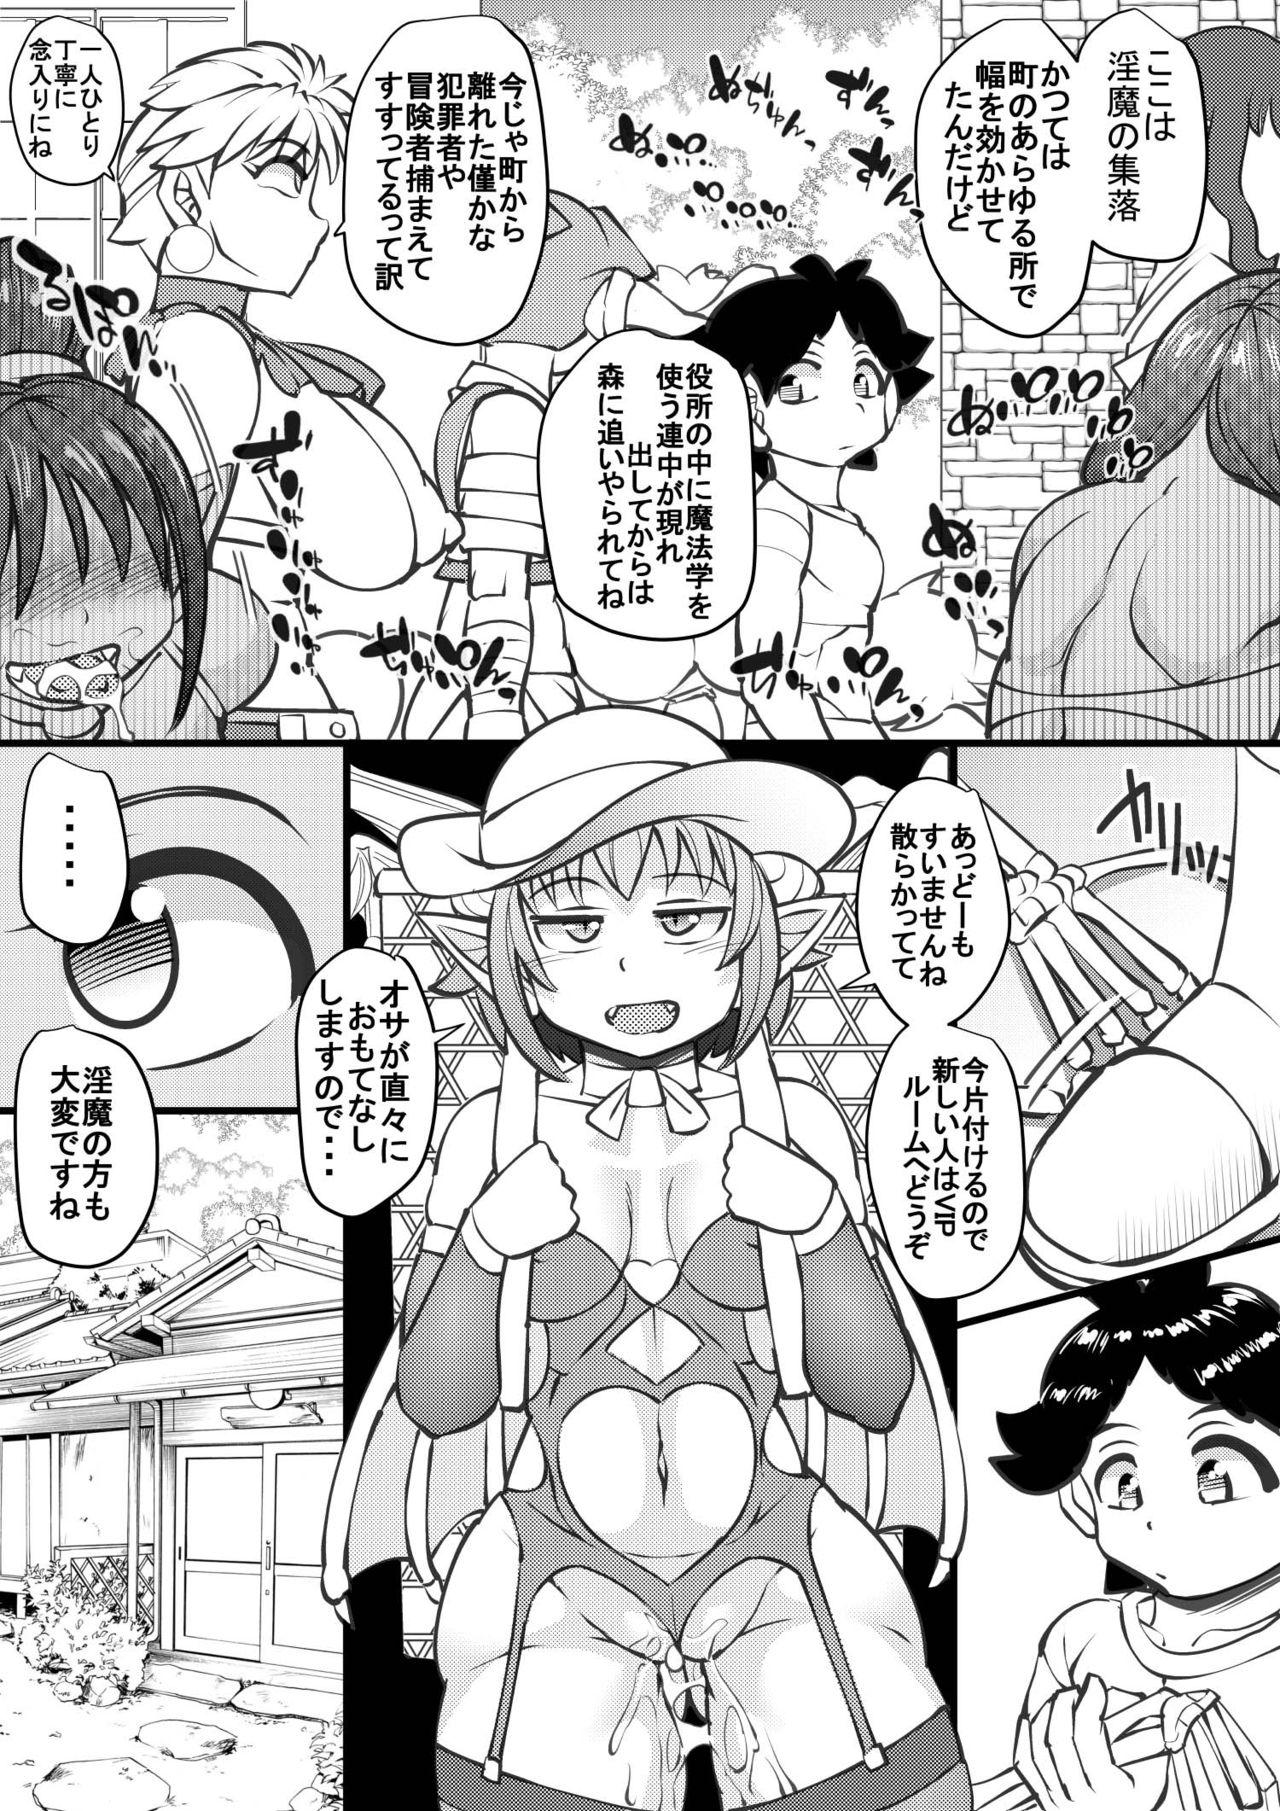 Dominate Uchi no Joseito Zenin Haramaseta Kedamono ga Anta no Gakuen ni Iku Rashii yo? 24 - Original Transvestite - Page 5